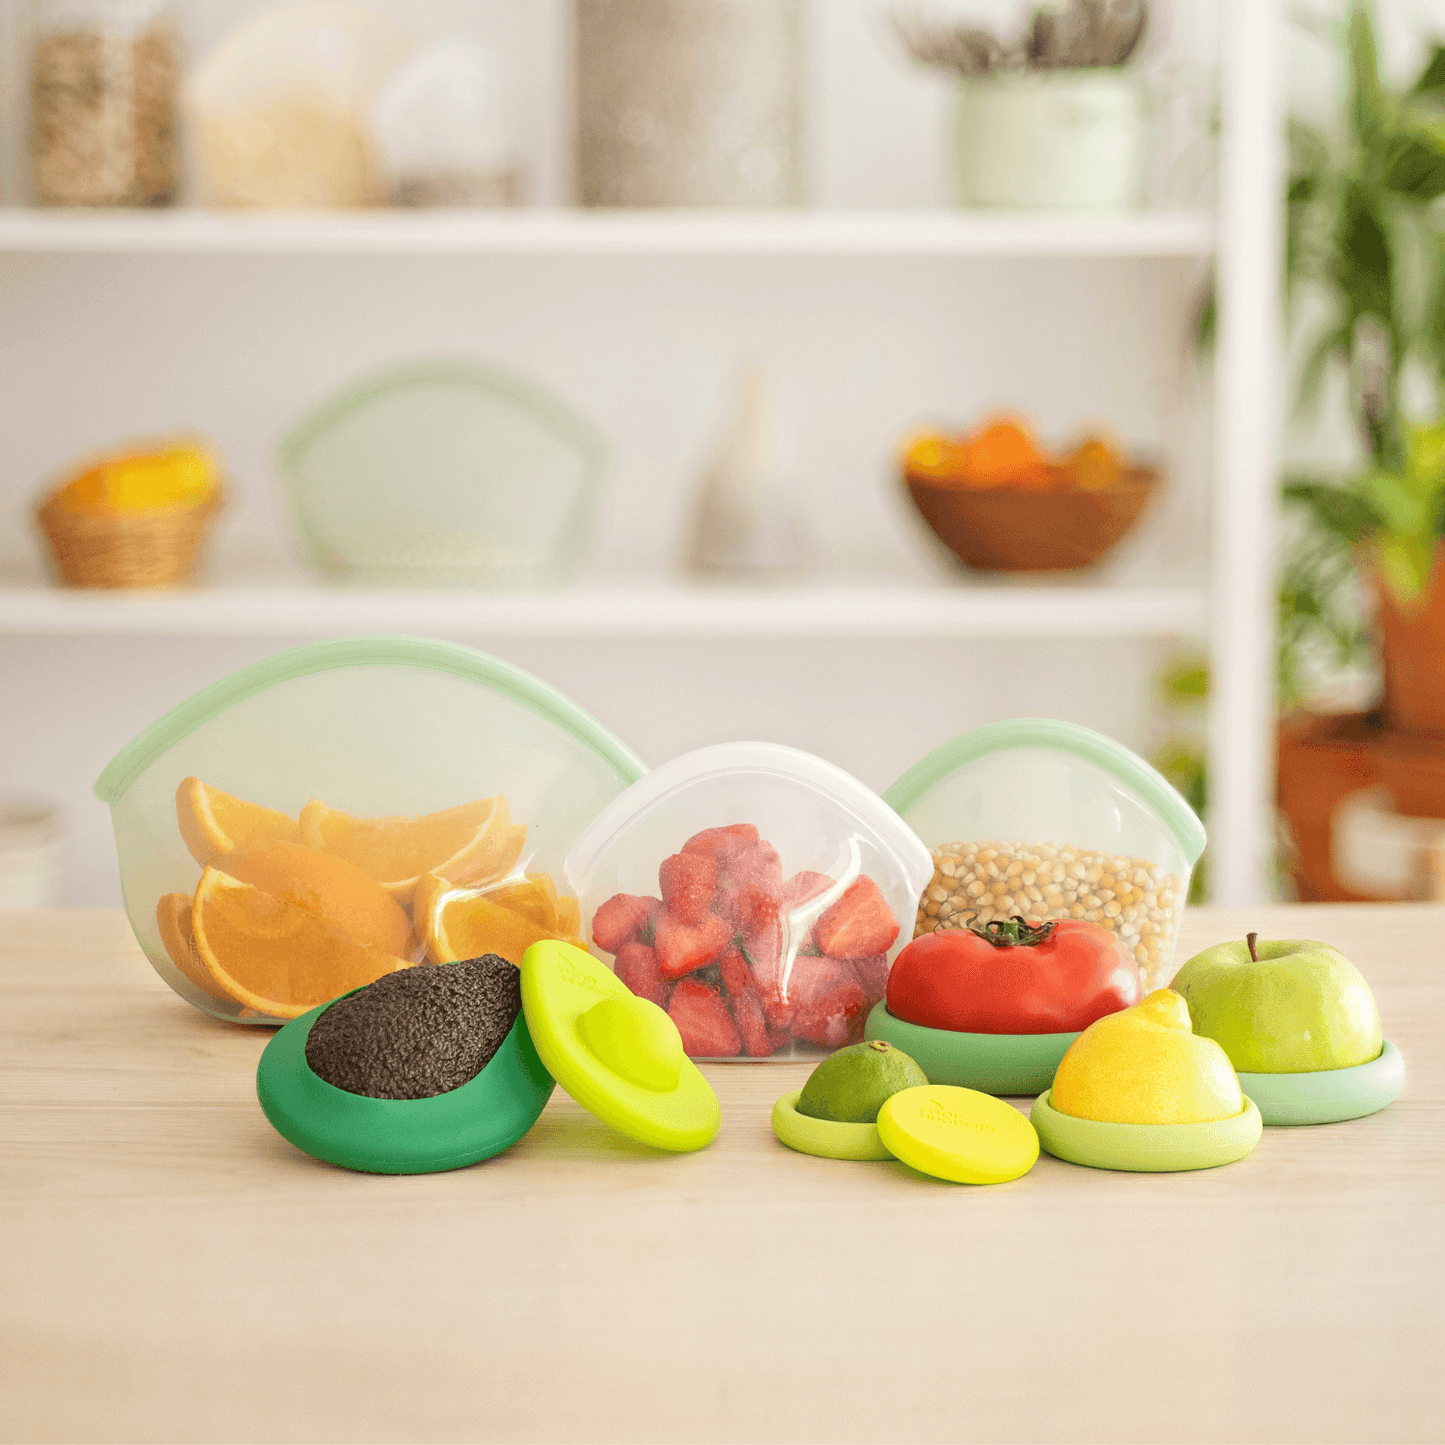 Tapa ajustable de silicona y vidrio de color verde, de Food Huggers